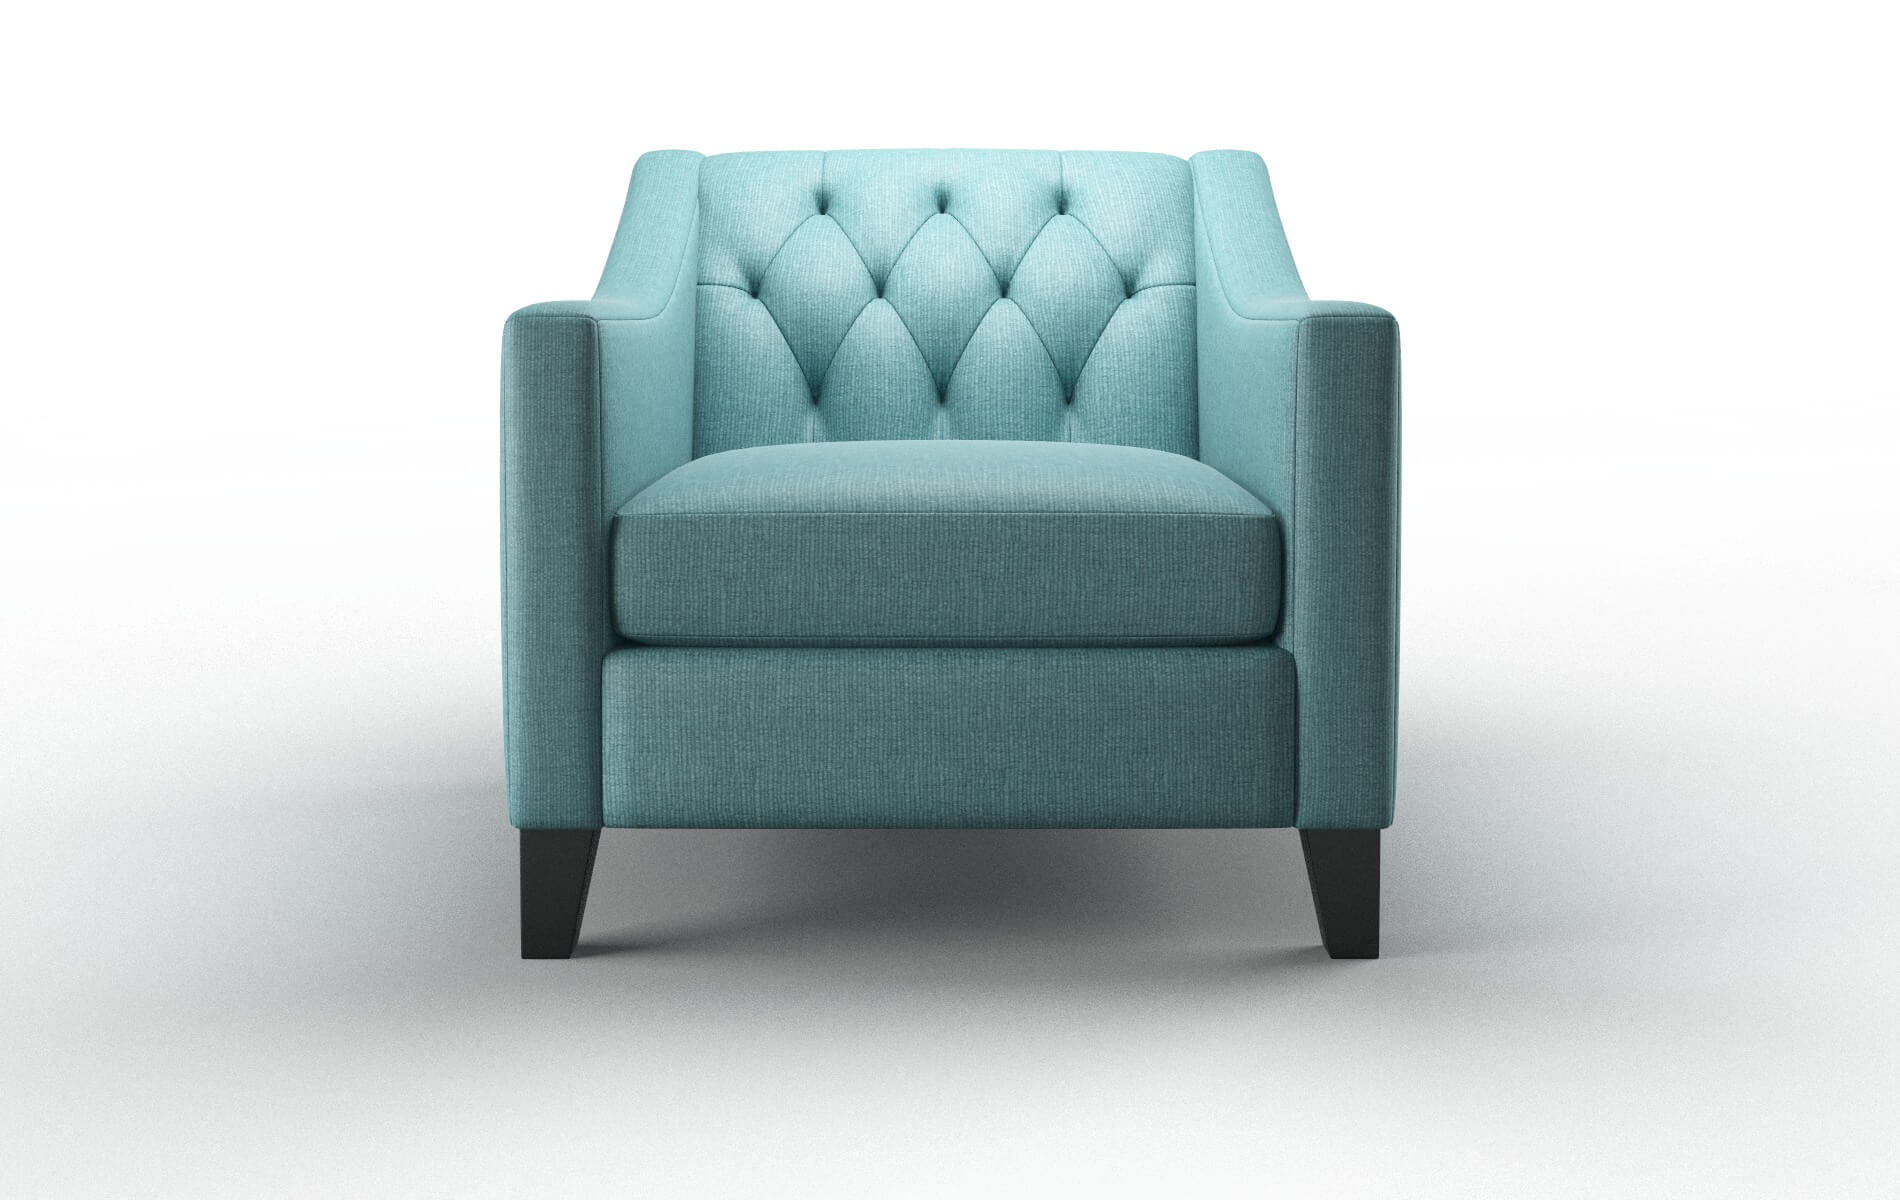 Seville Parker Turquoise chair espresso legs